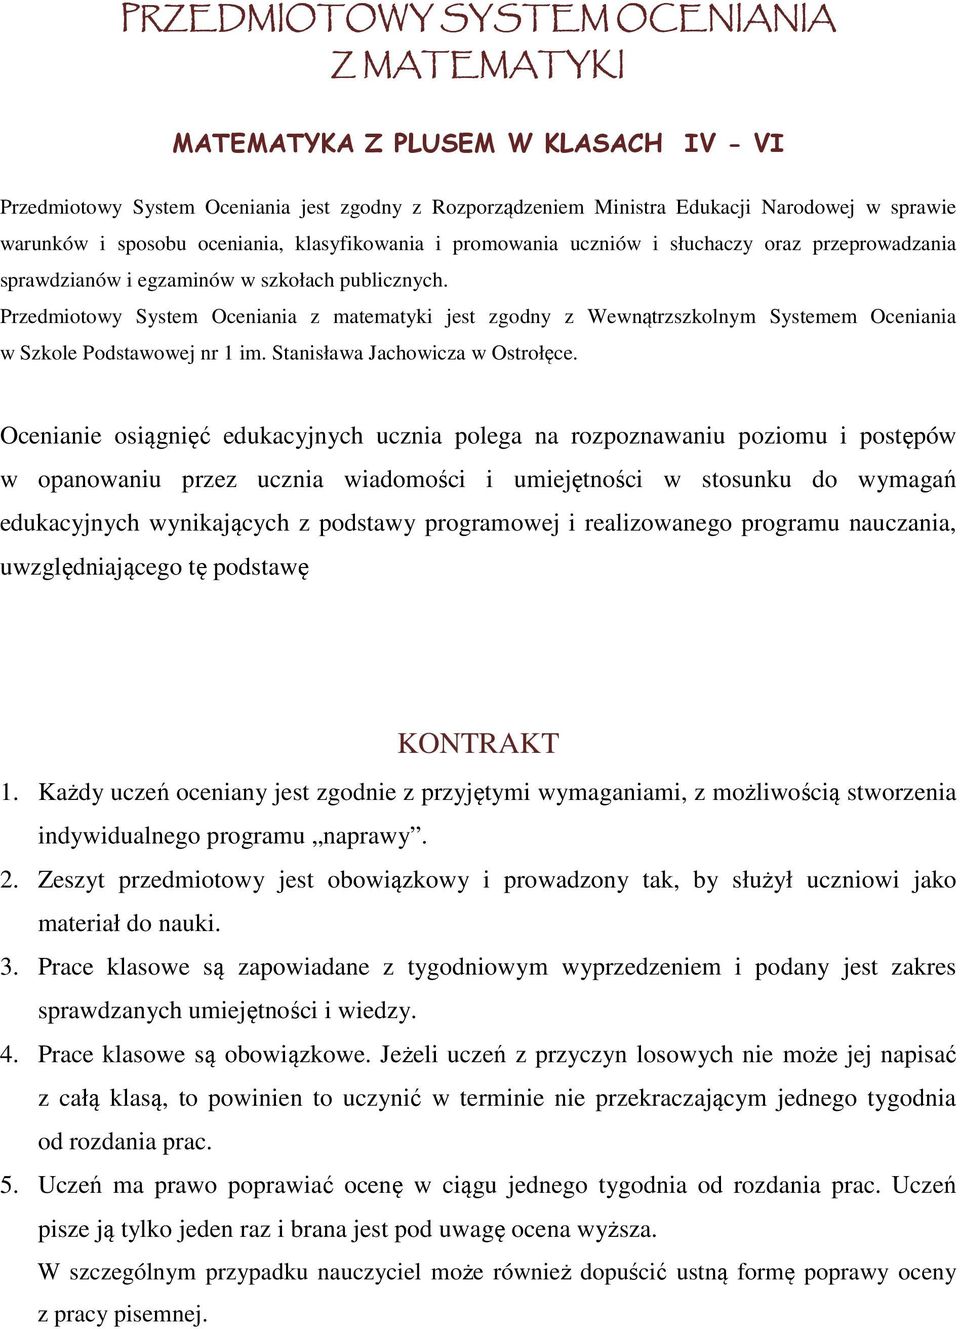 Przedmiotowy System Oceniania z matematyki jest zgodny z Wewnątrzszkolnym Systemem Oceniania w Szkole Podstawowej nr 1 im. Stanisława Jachowicza w Ostrołęce.